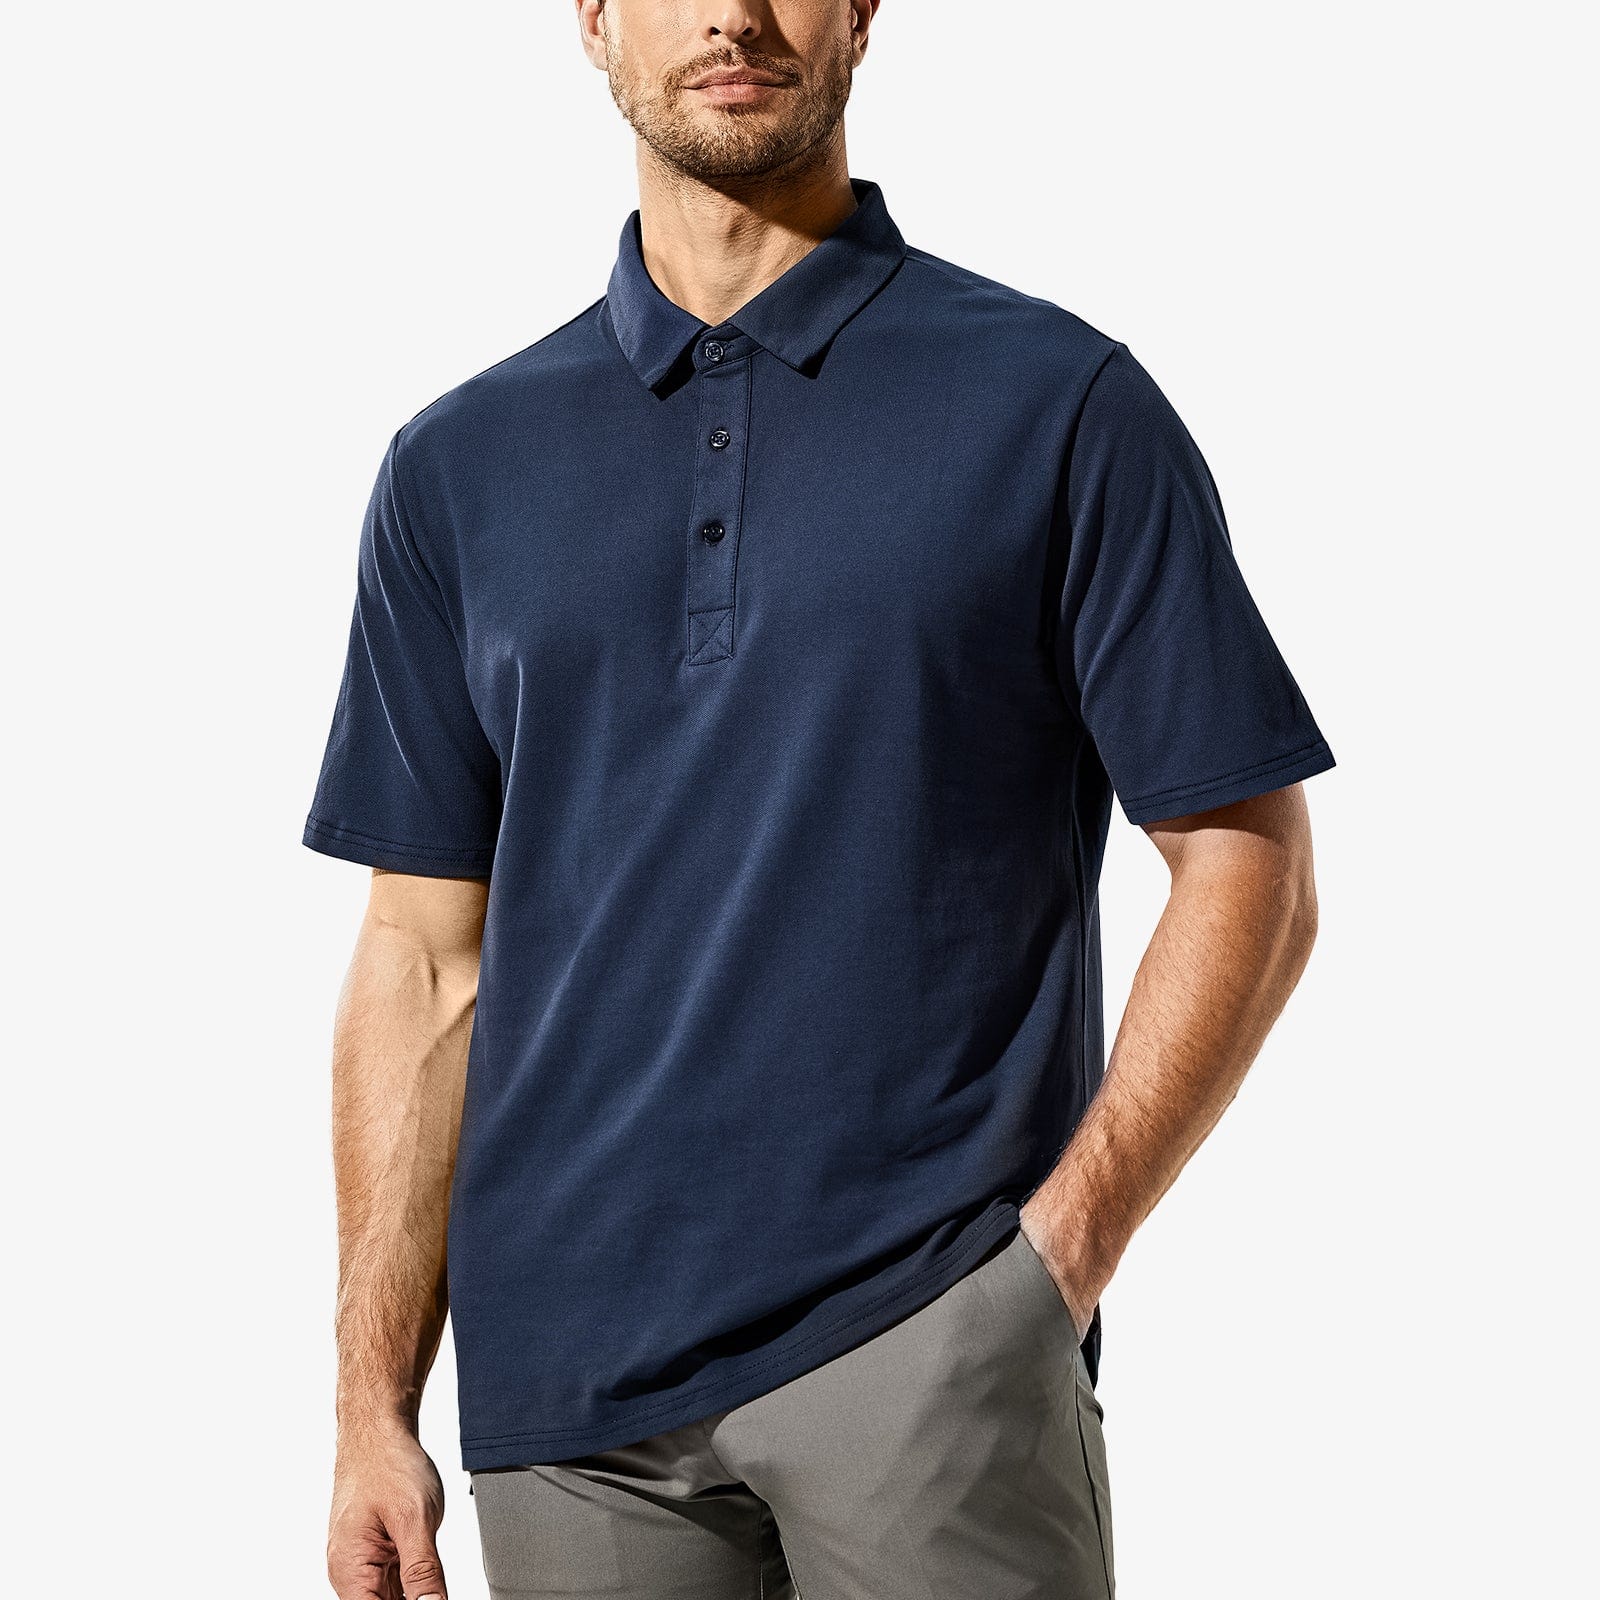  Cute Summer Sun Men's Zipper Polo Shirts Short Sleeve